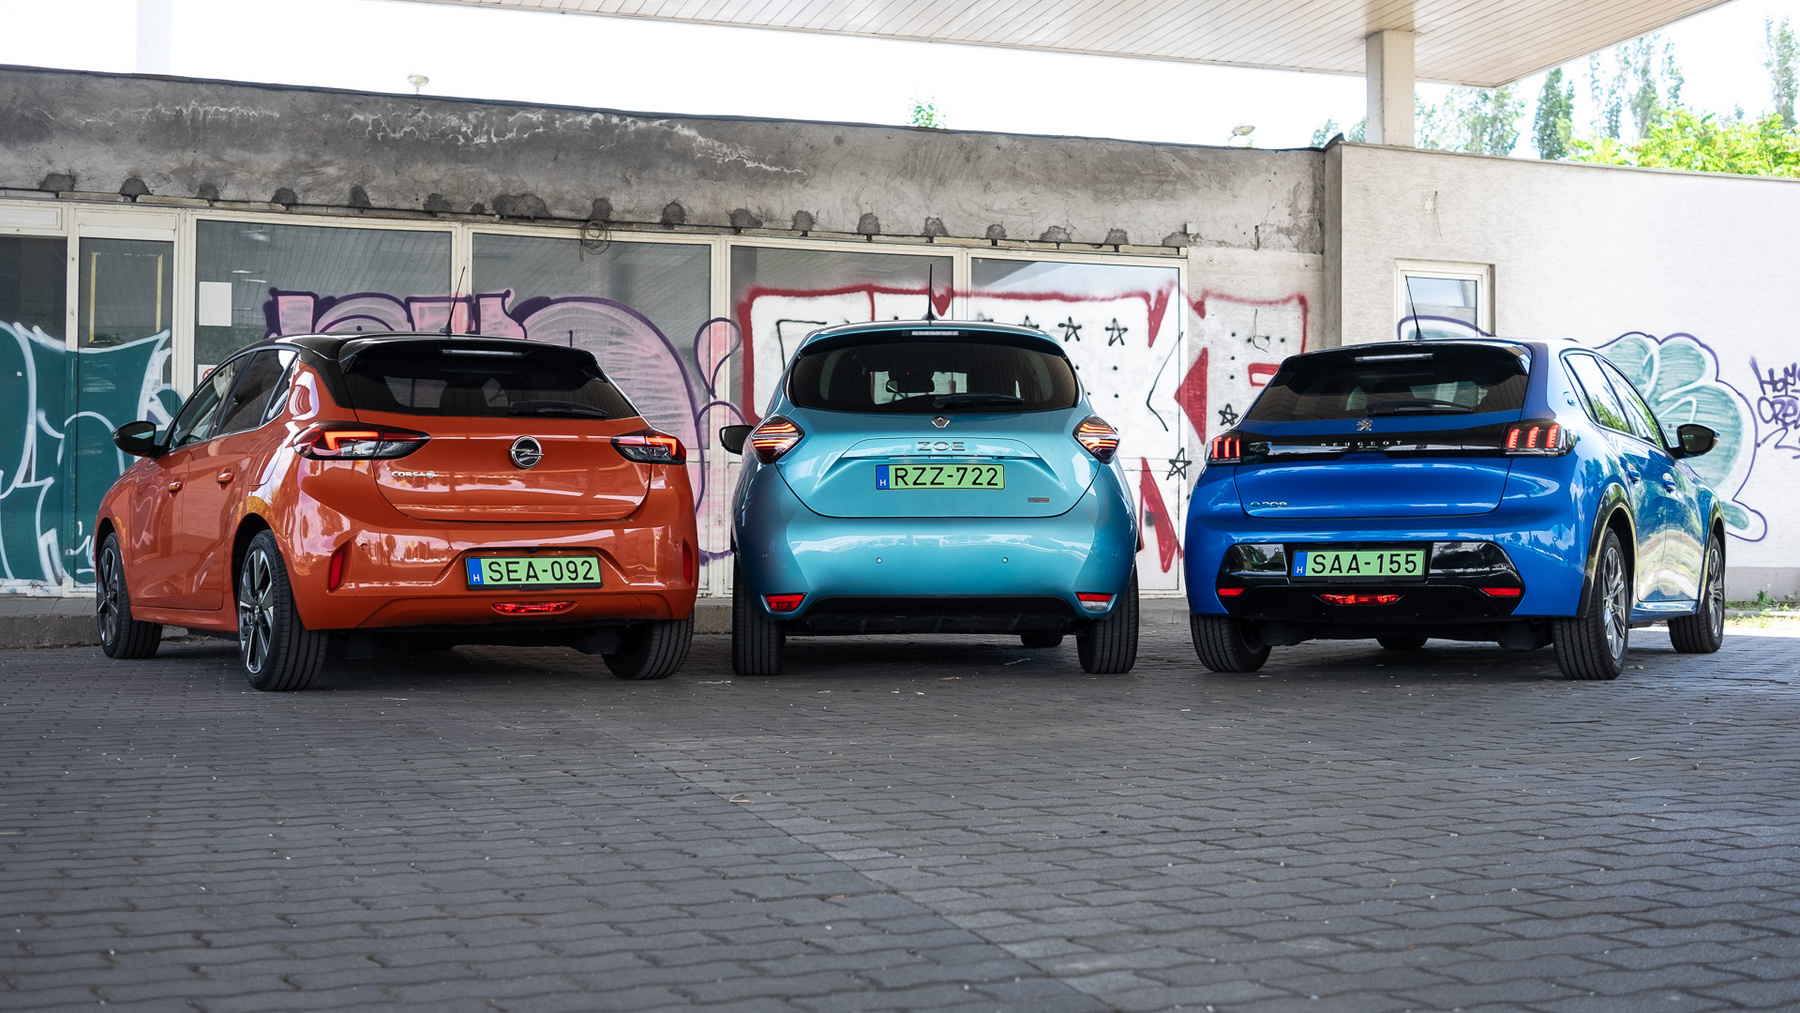 Fogyasztásban alig van a három autó között különbség, de a Zoé most, Magyarországon nagyjából kétszer gyorsabban tud tölteni